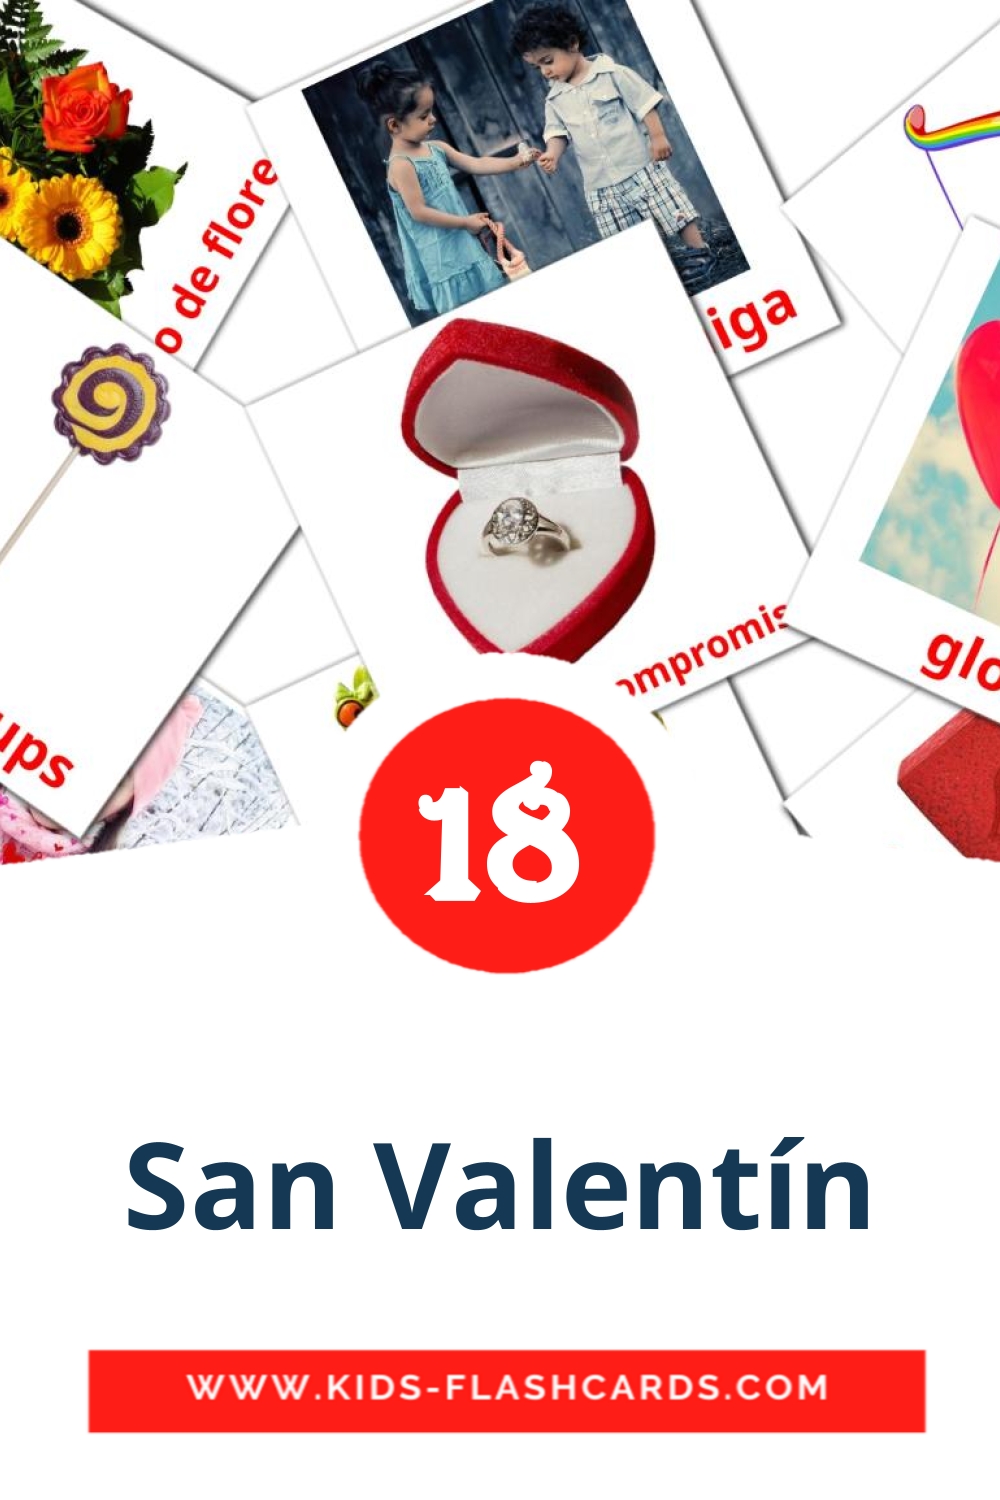 San Valentín на испанском для Детского Сада (18 карточек)